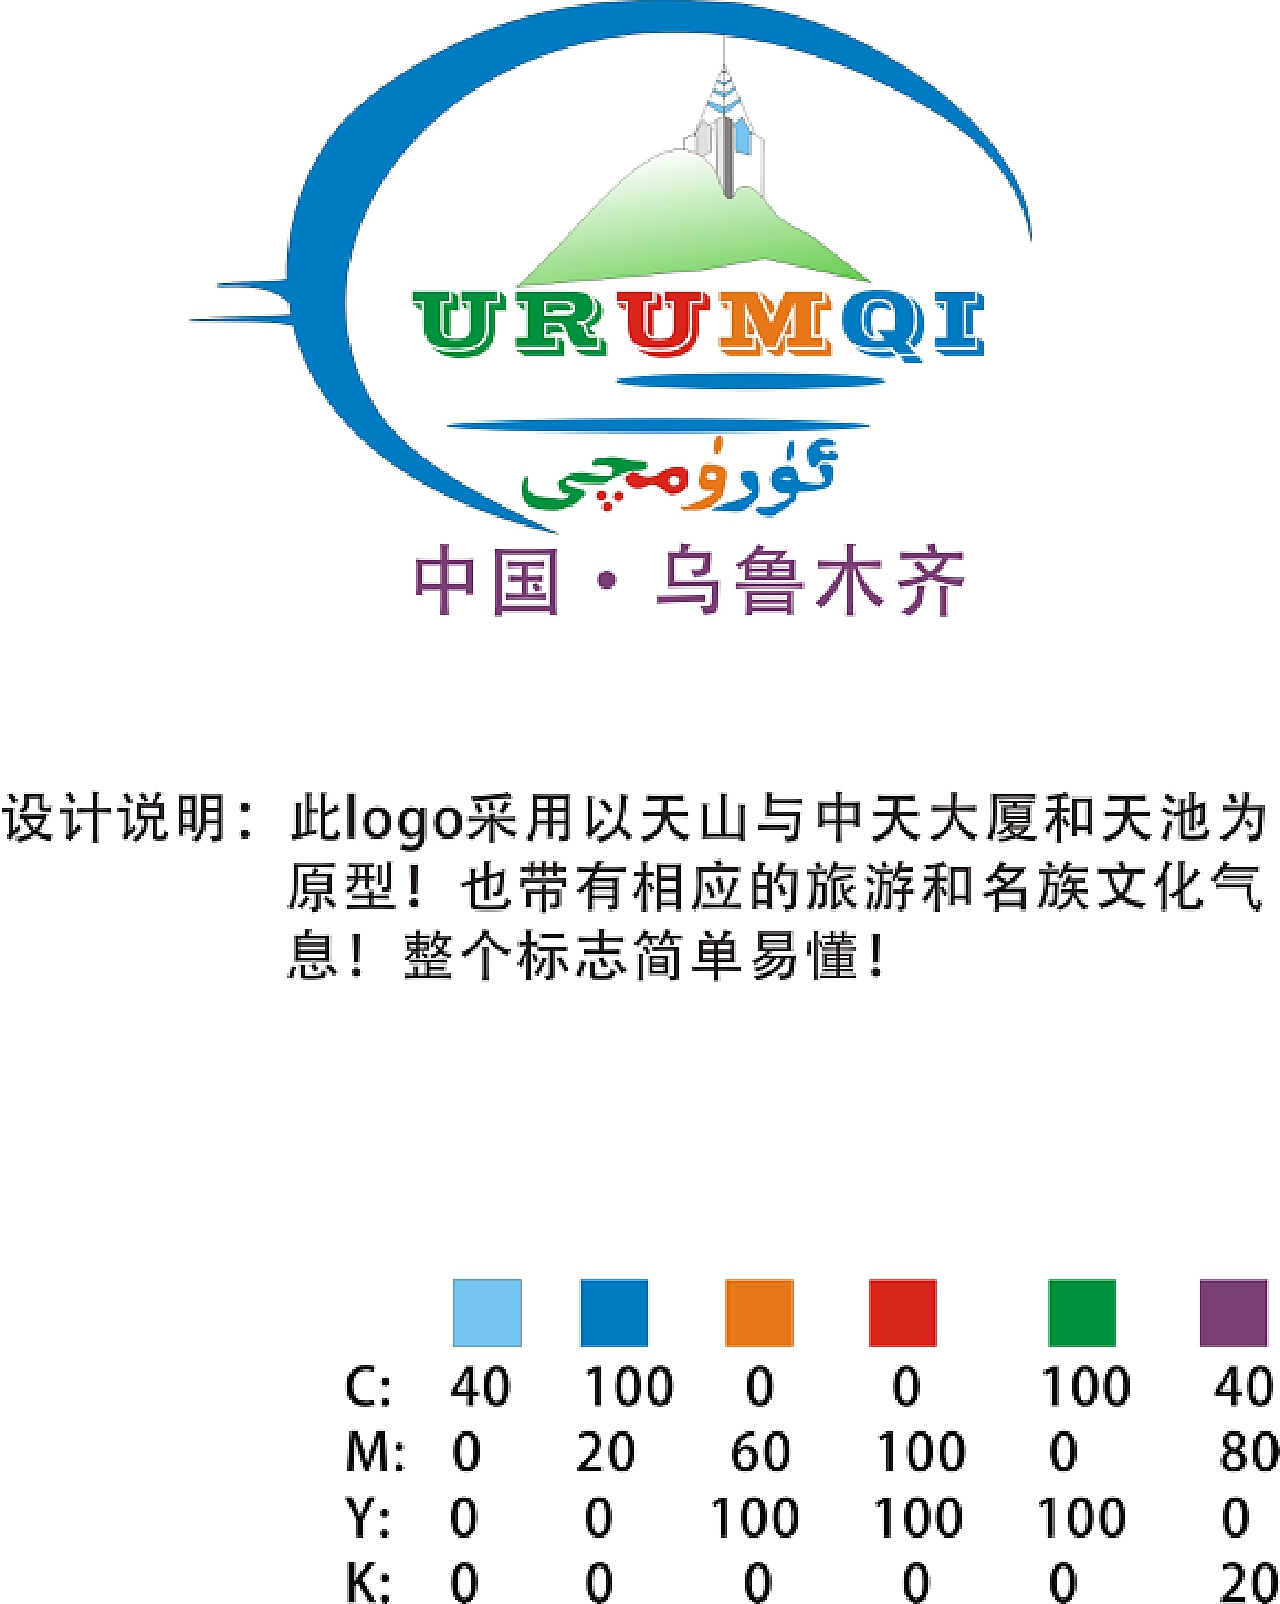 乌鲁木齐旅游形象logo宣传标语征集活动